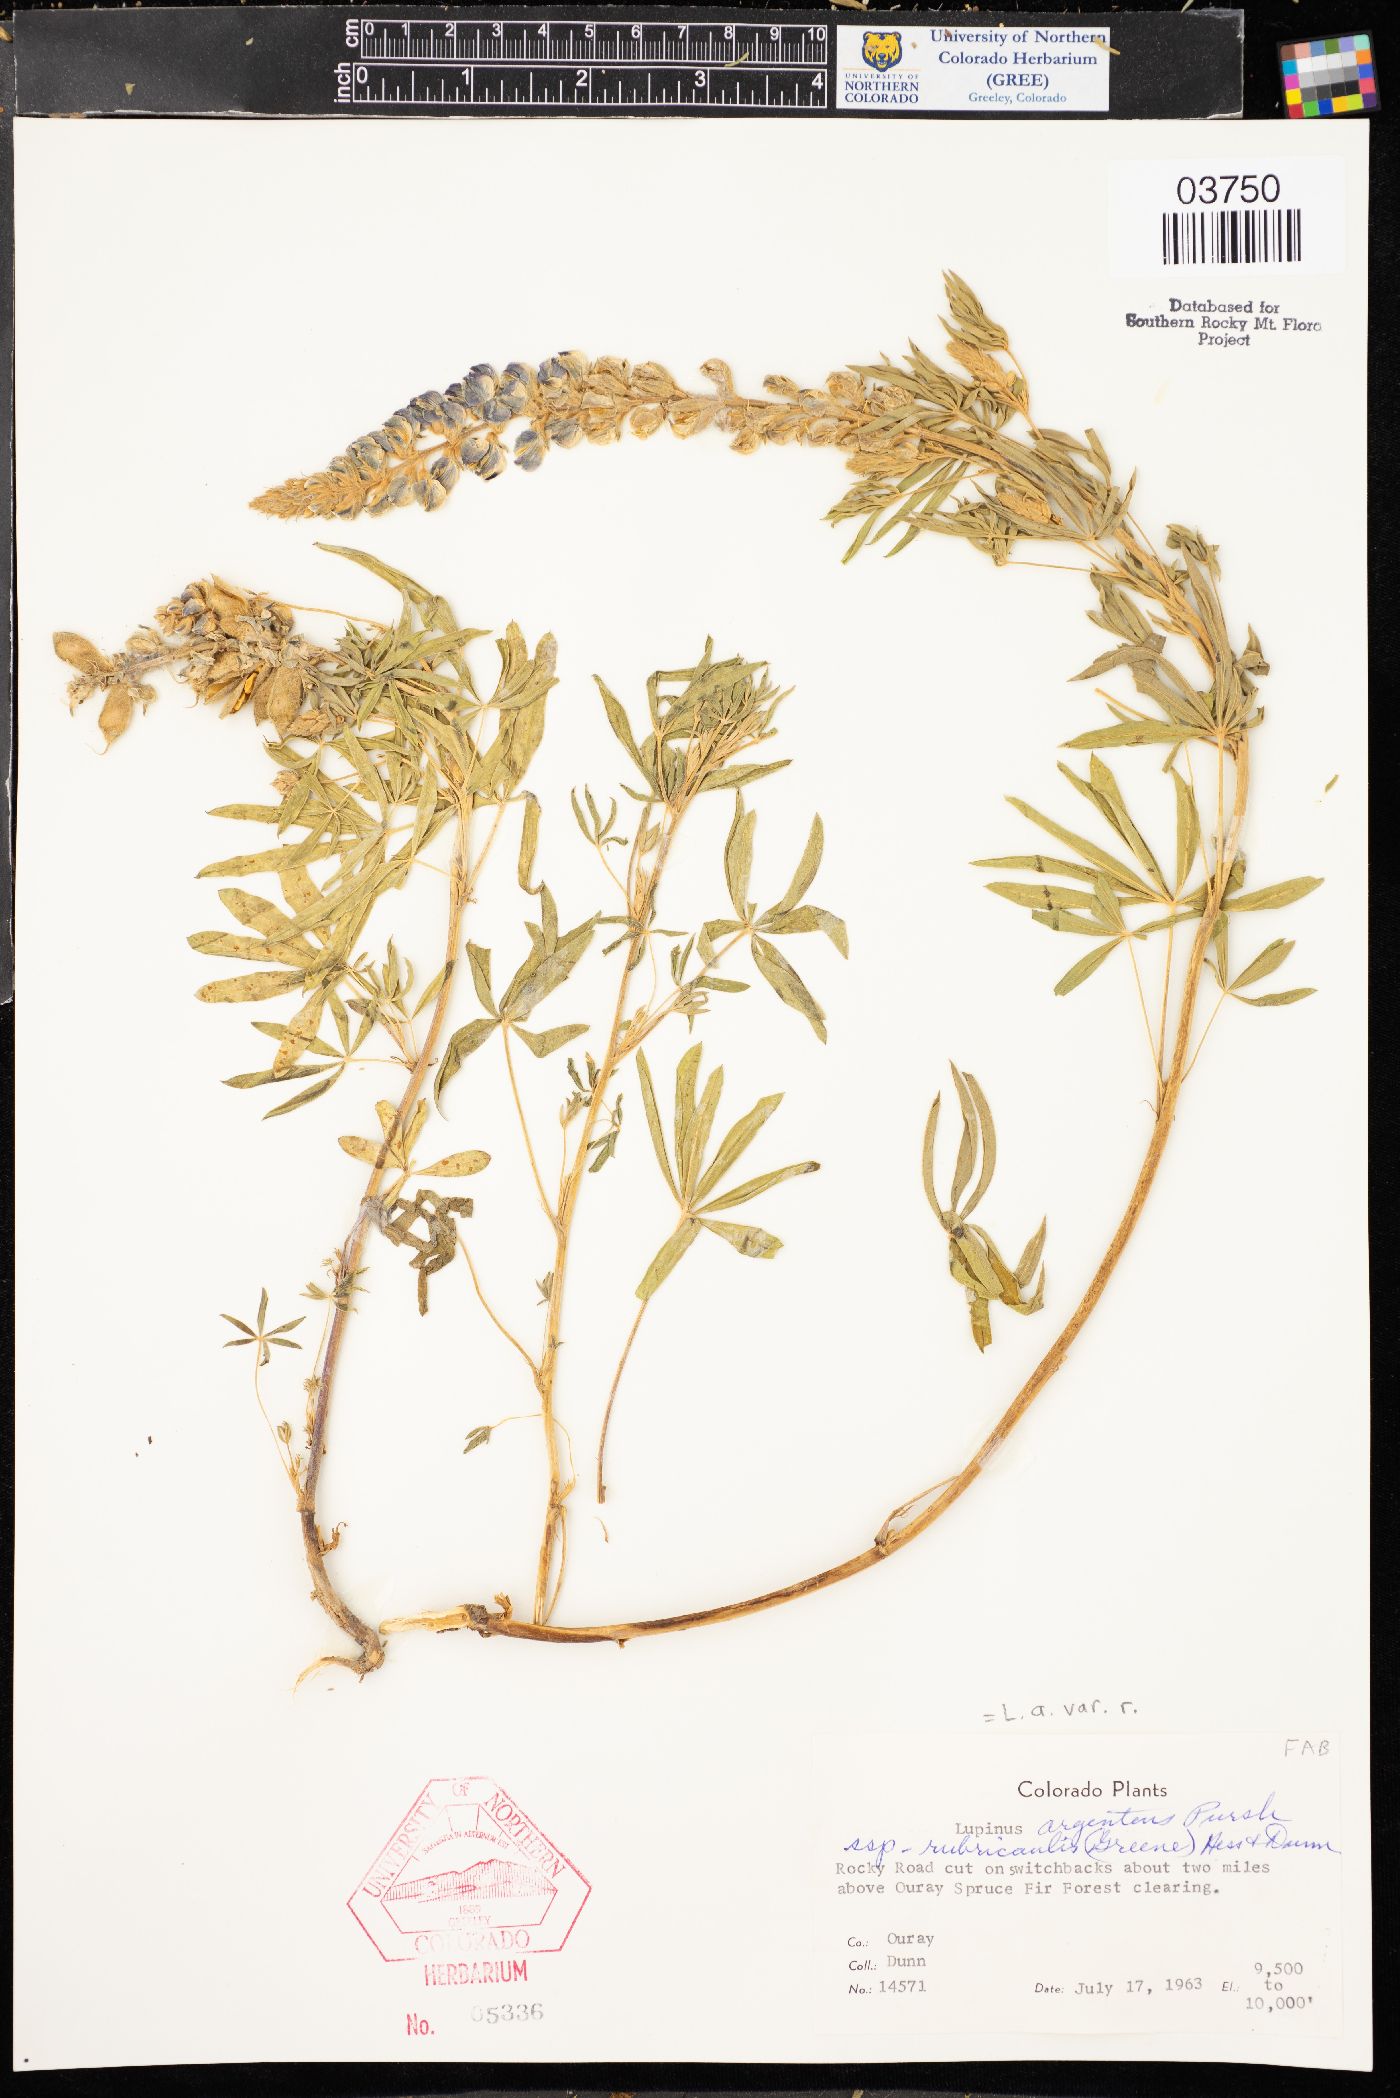 Lupinus argenteus subsp. rubricaulis image